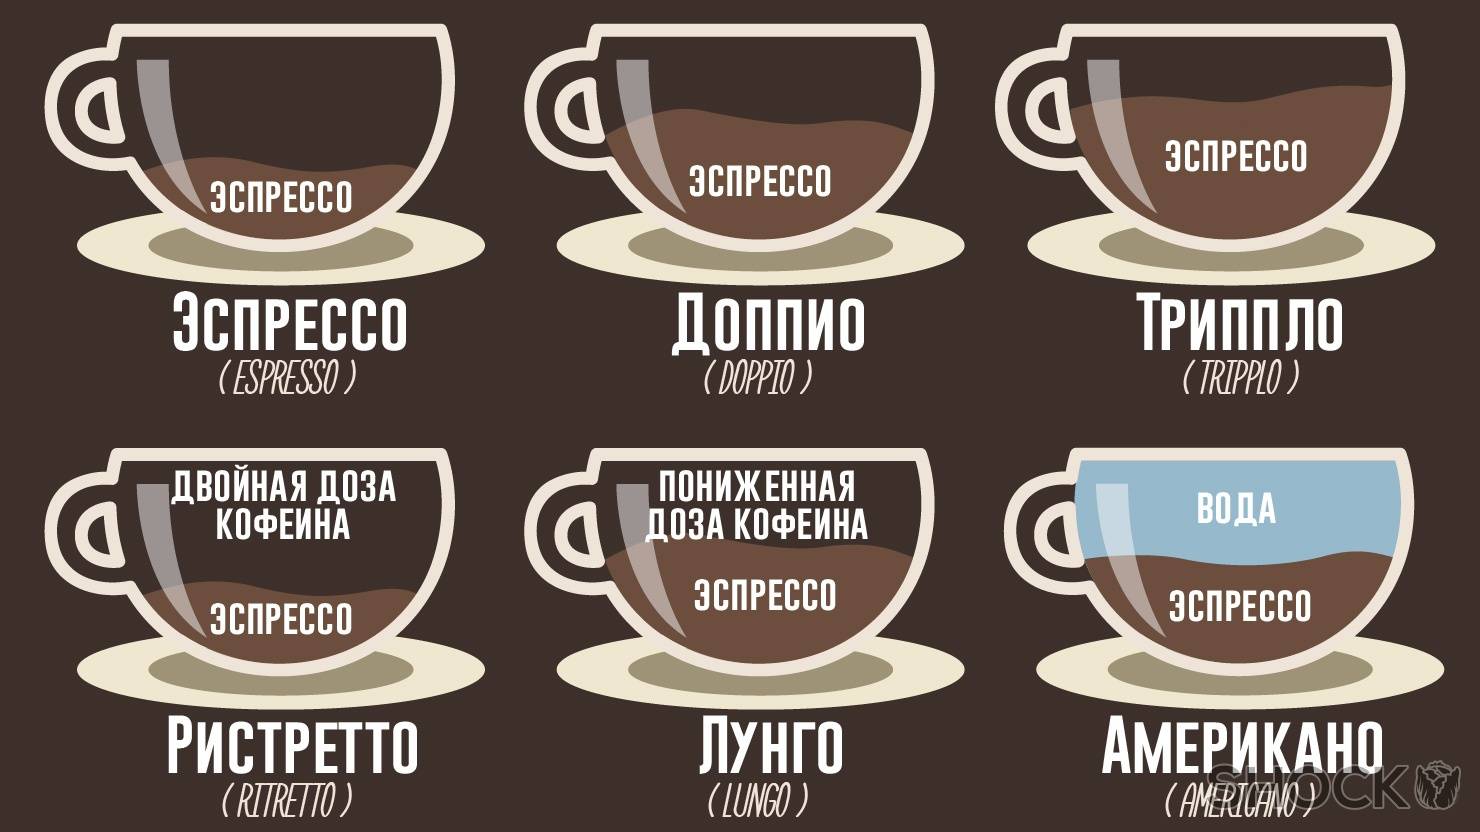 Капучино – кофе, созданный капуцинами